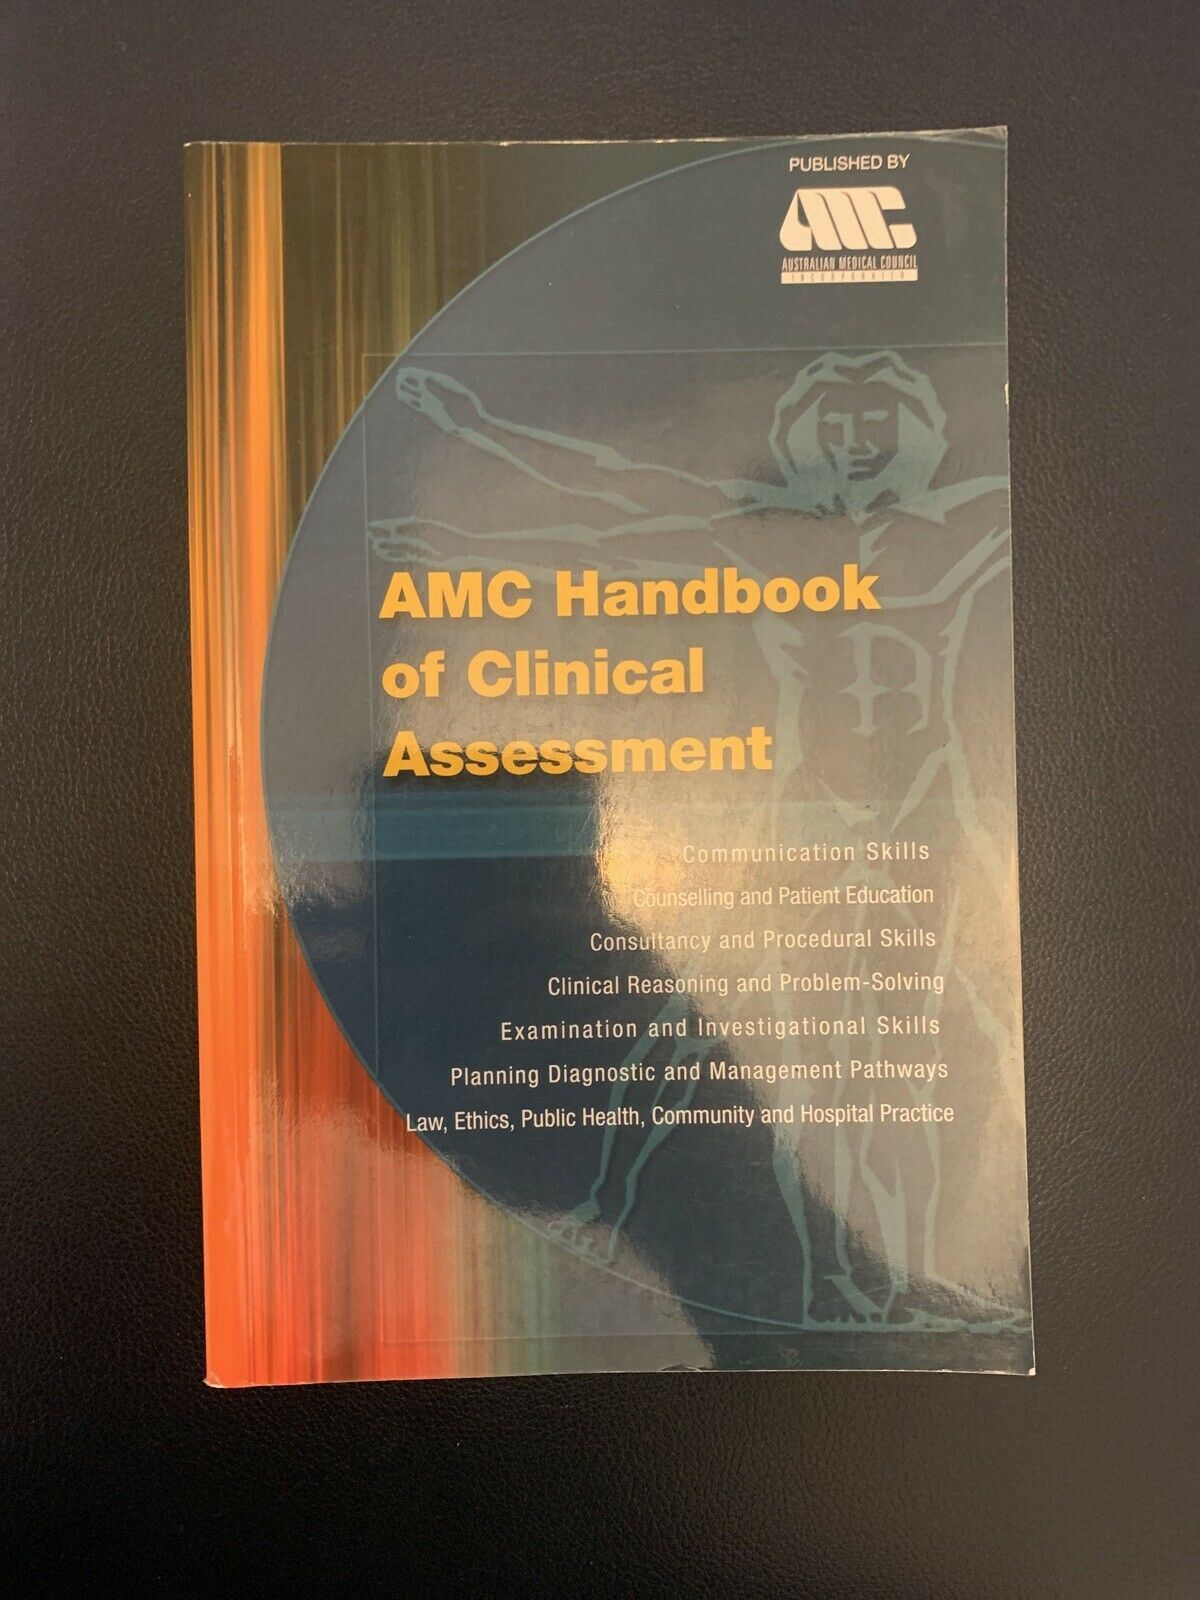 AMC Handbook Of Clinical Assessment - Australian Medical Council 2007